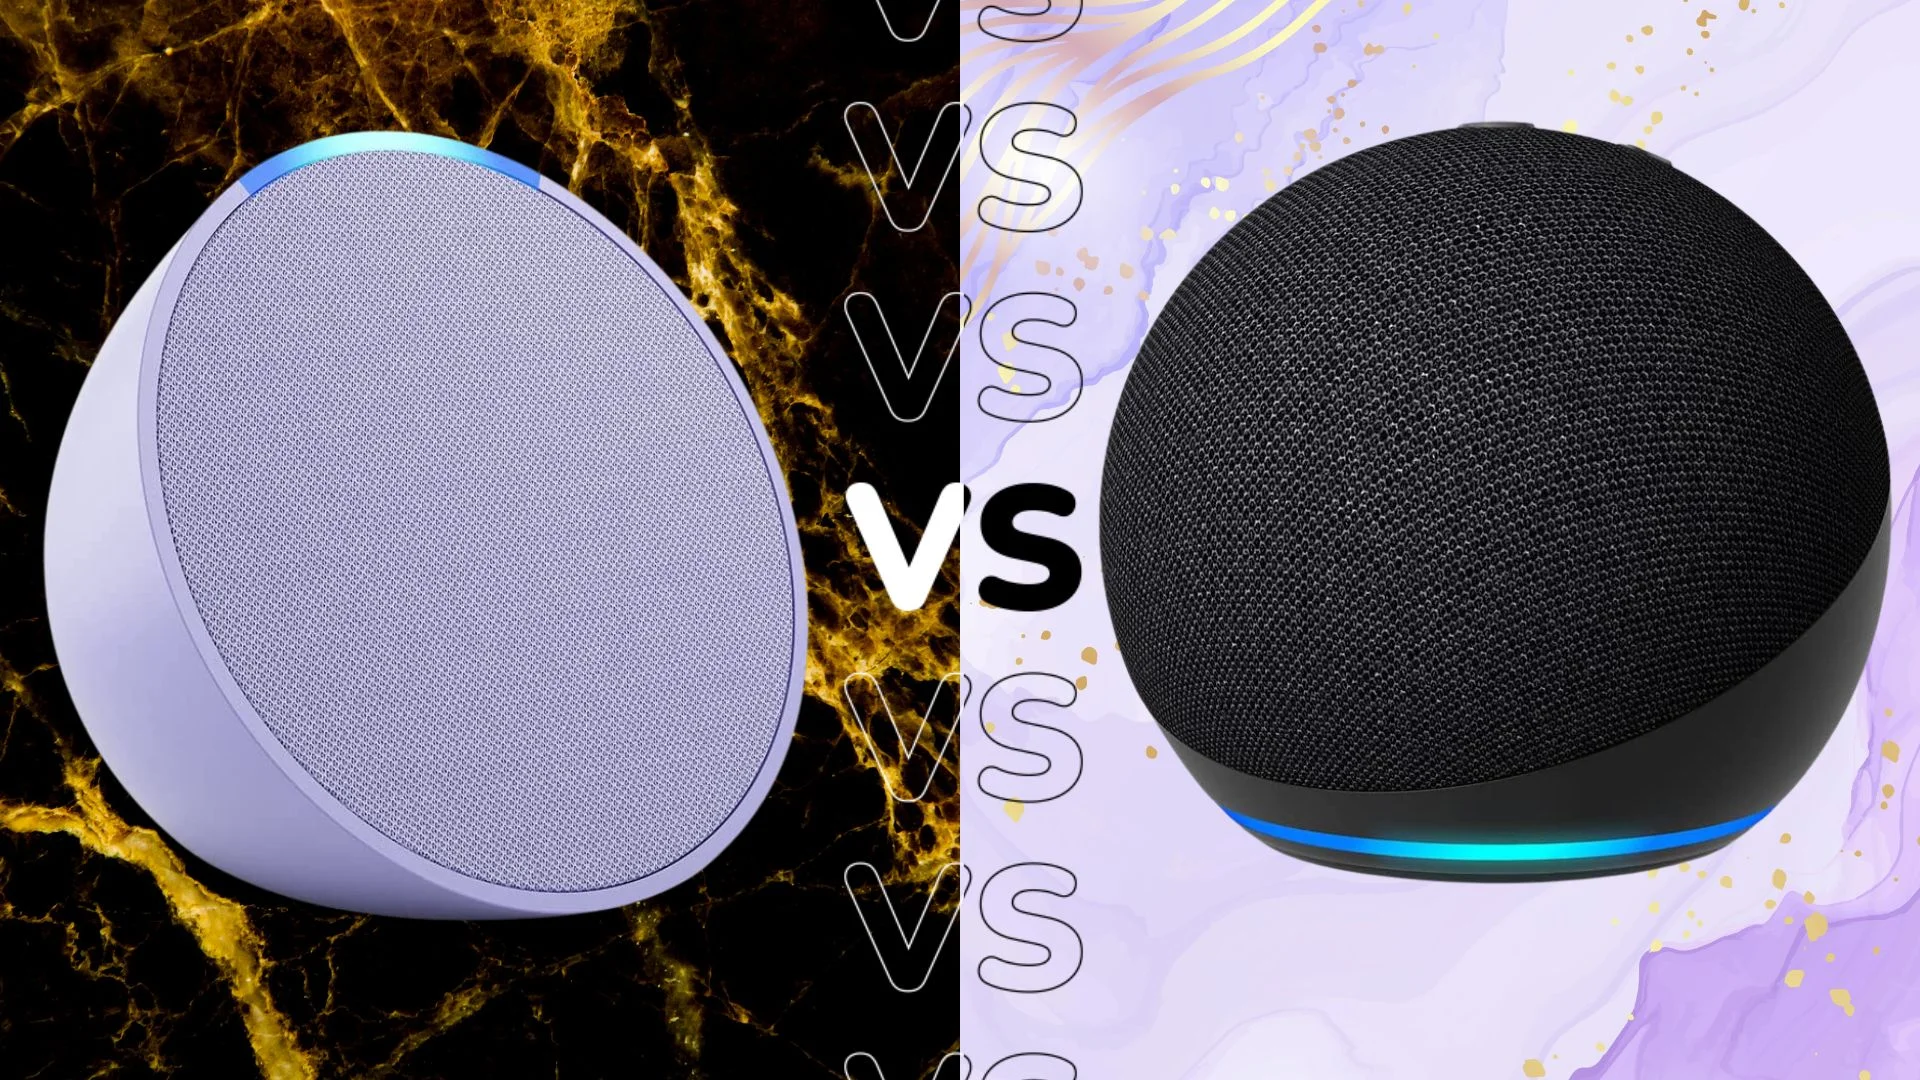 Amazon Echo Pop vs Amazon Echo Dot: ¿Y ahora cuál me compro?